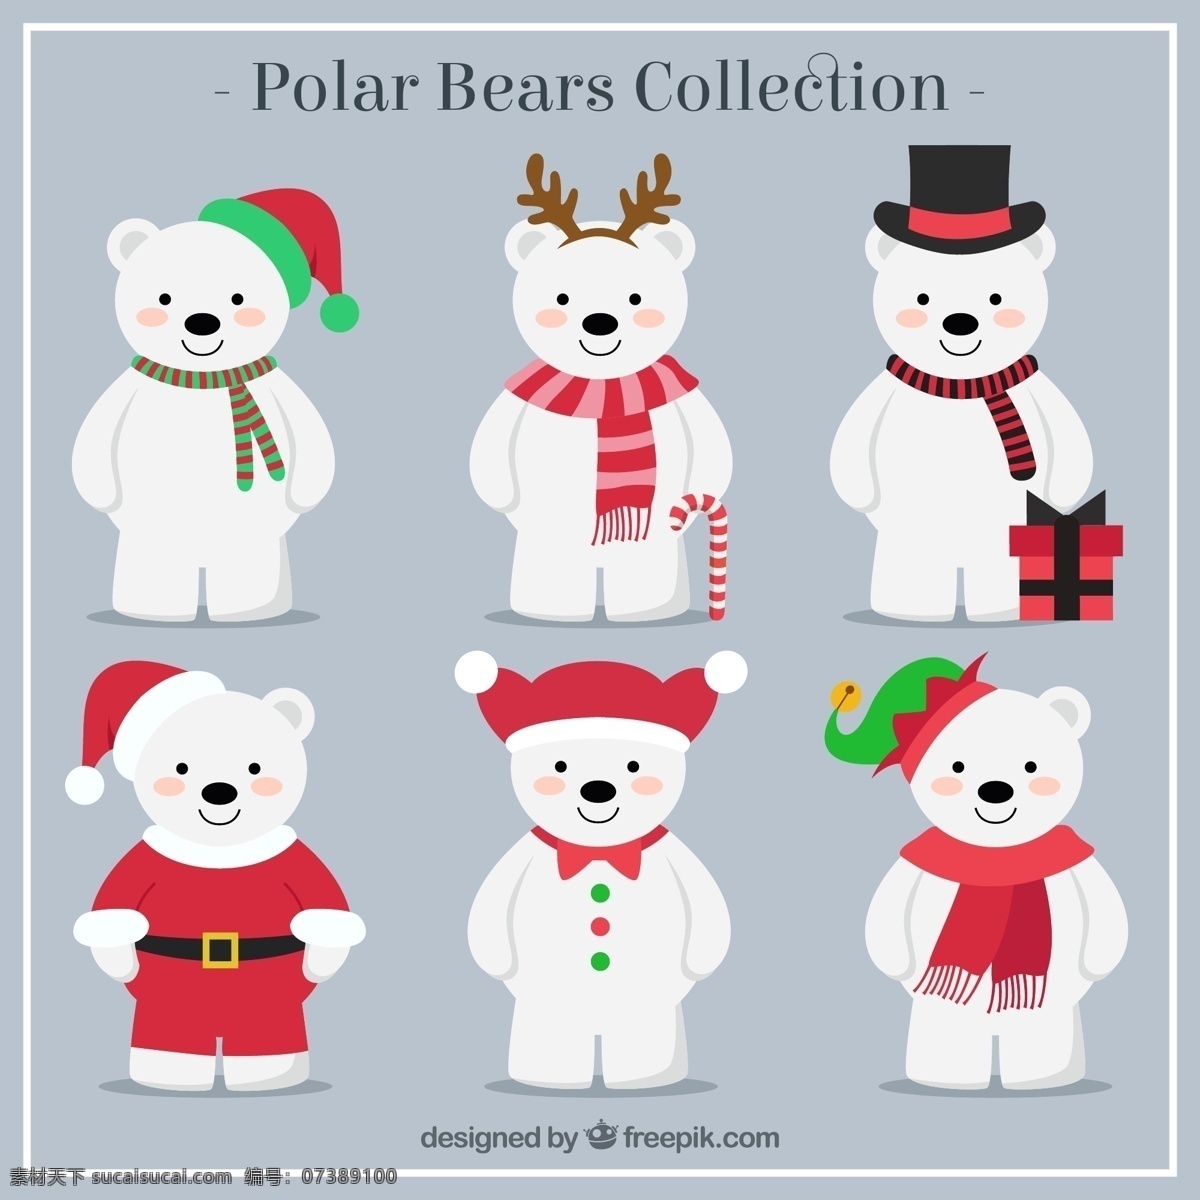 可爱 北极熊 矢量 圣诞帽 礼盒 礼帽 圣诞节 拐棍糖 节日 动物 矢量图 白色